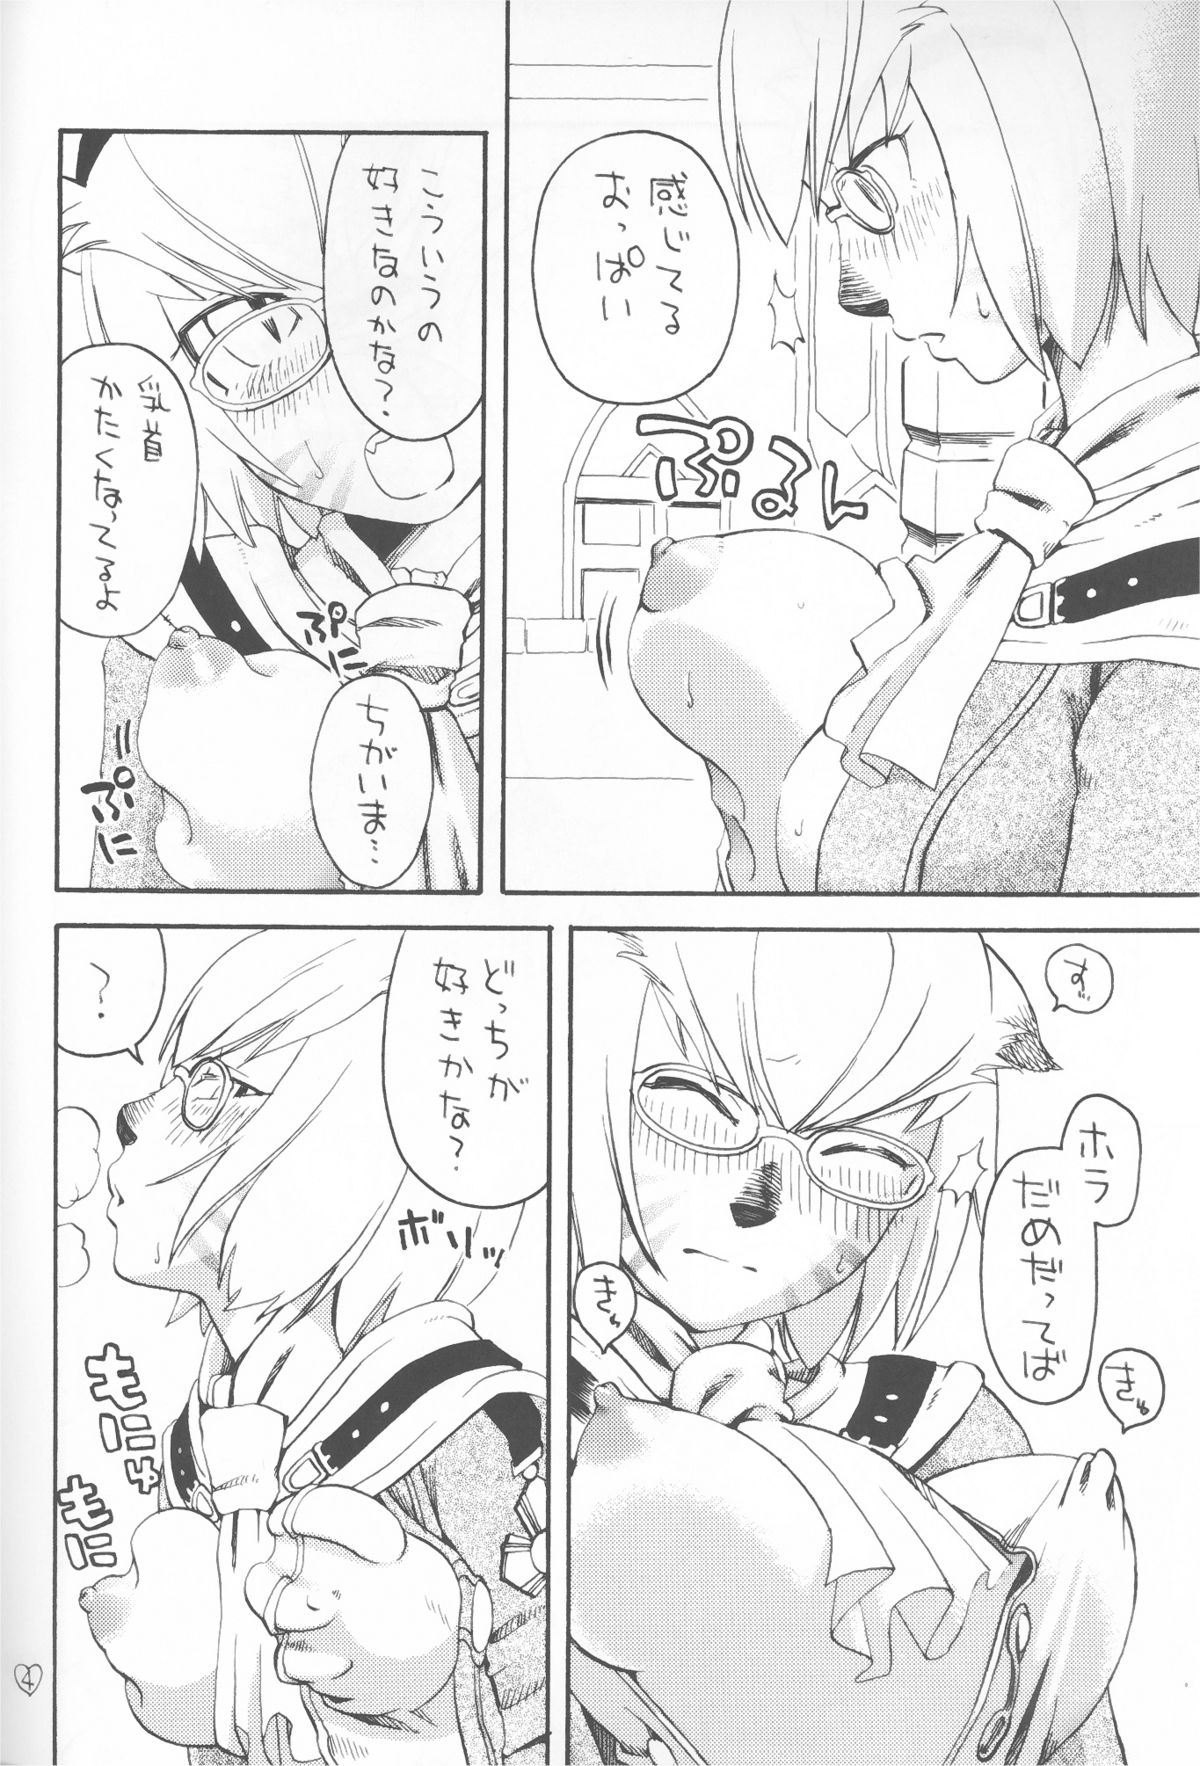 [Nichiyouban (Hoshina Shintarou)] Saretagatte iru (Final Fantasy XI) [2008-01-25] page 4 full